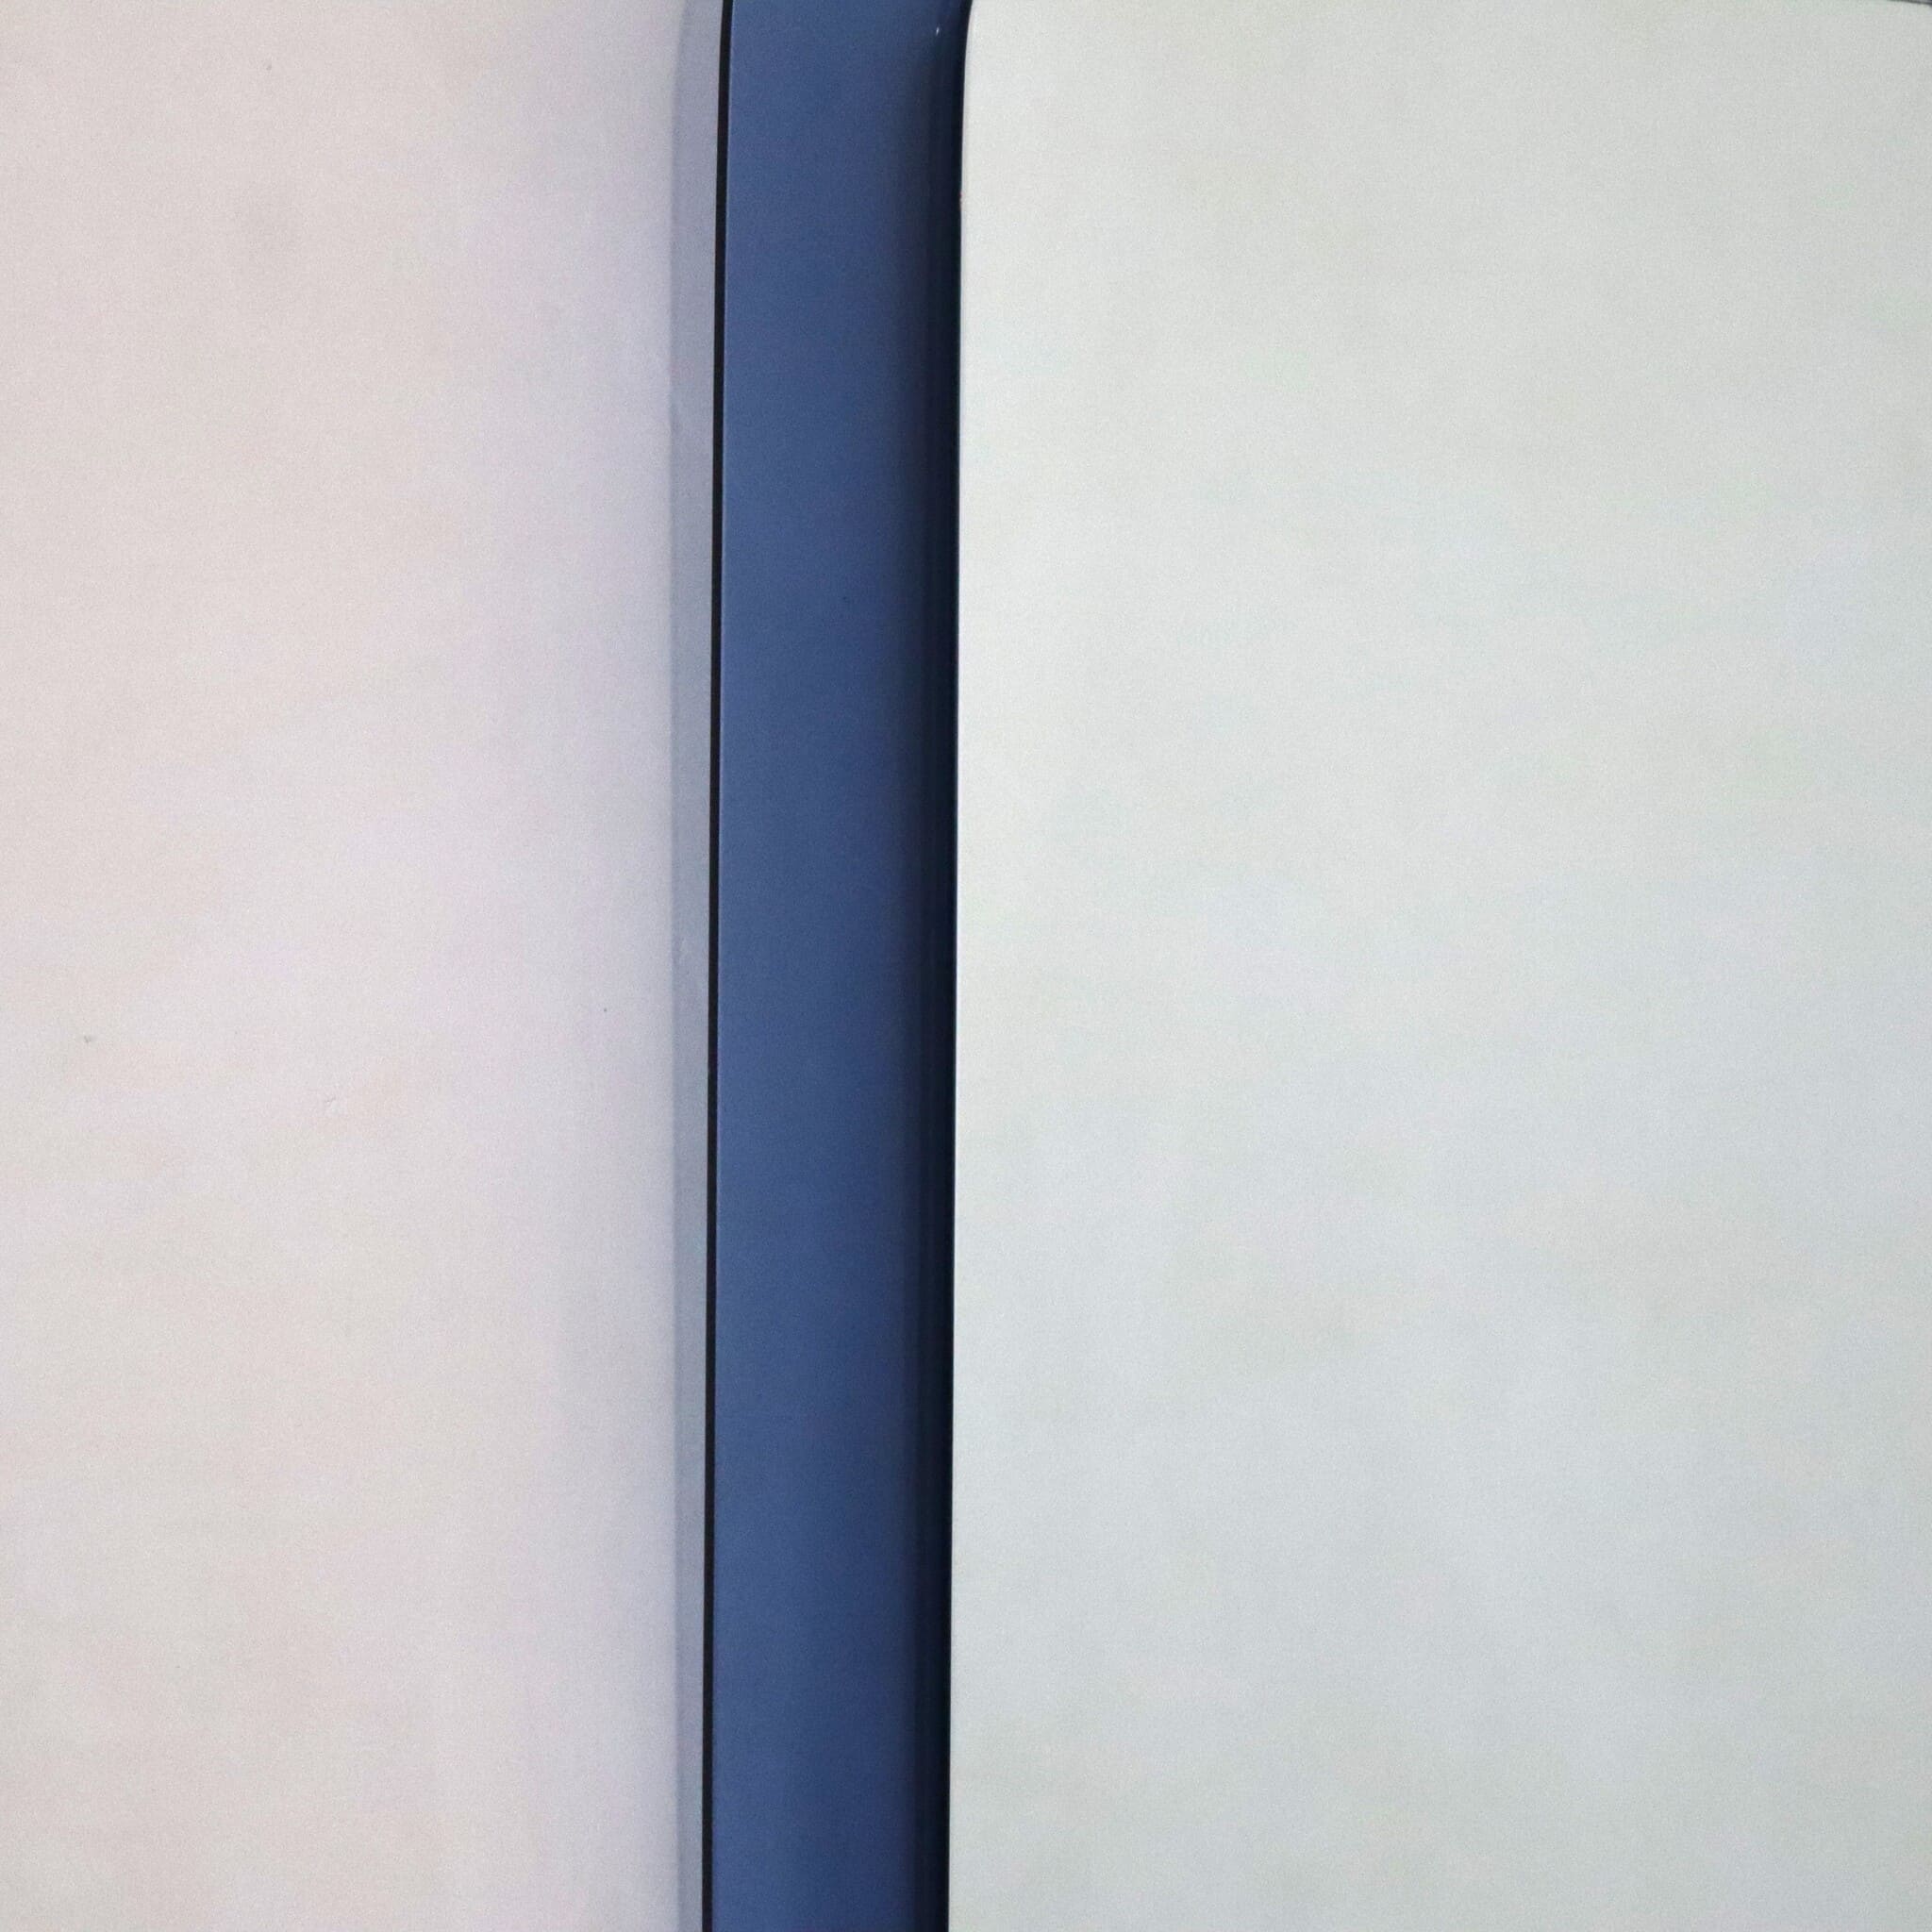 specchio-quadrato-bordi-rotondi-blu-cobalto-anni-70-dettaglio-colarzione-visionidepoca